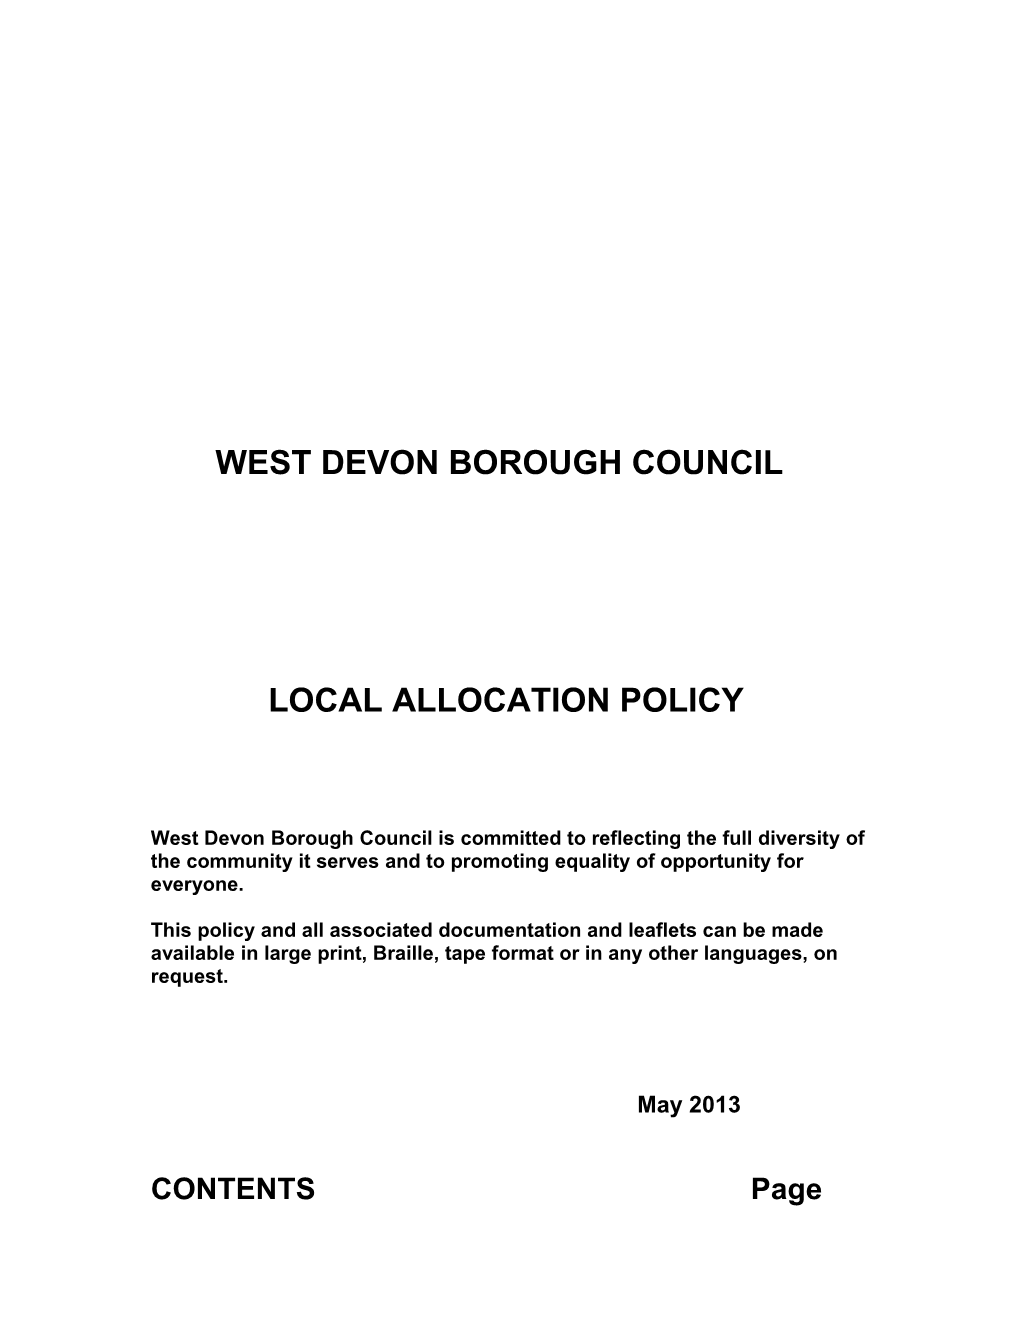 West Devon Borouch Council